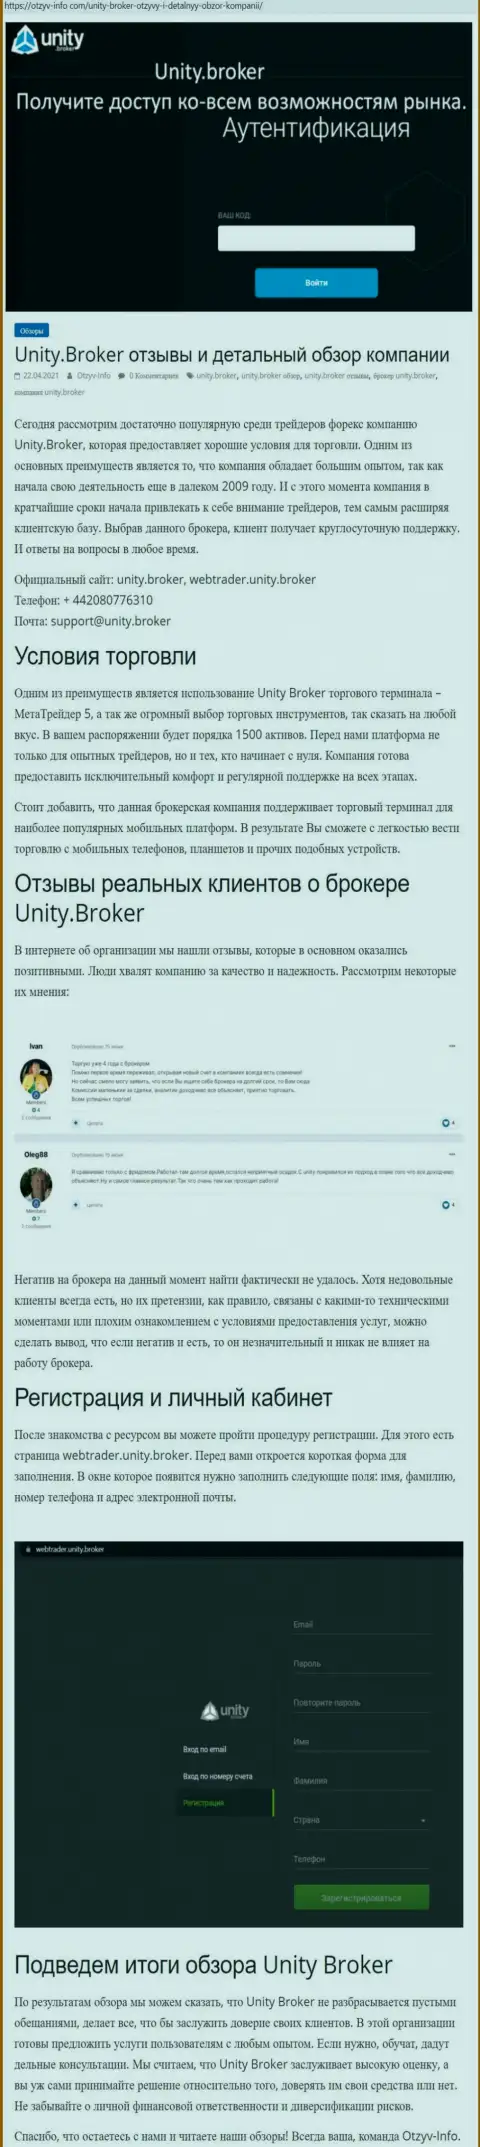 Обзор работы Форекс-организации Unity Broker на сайте Отзыв-Инфо Ком